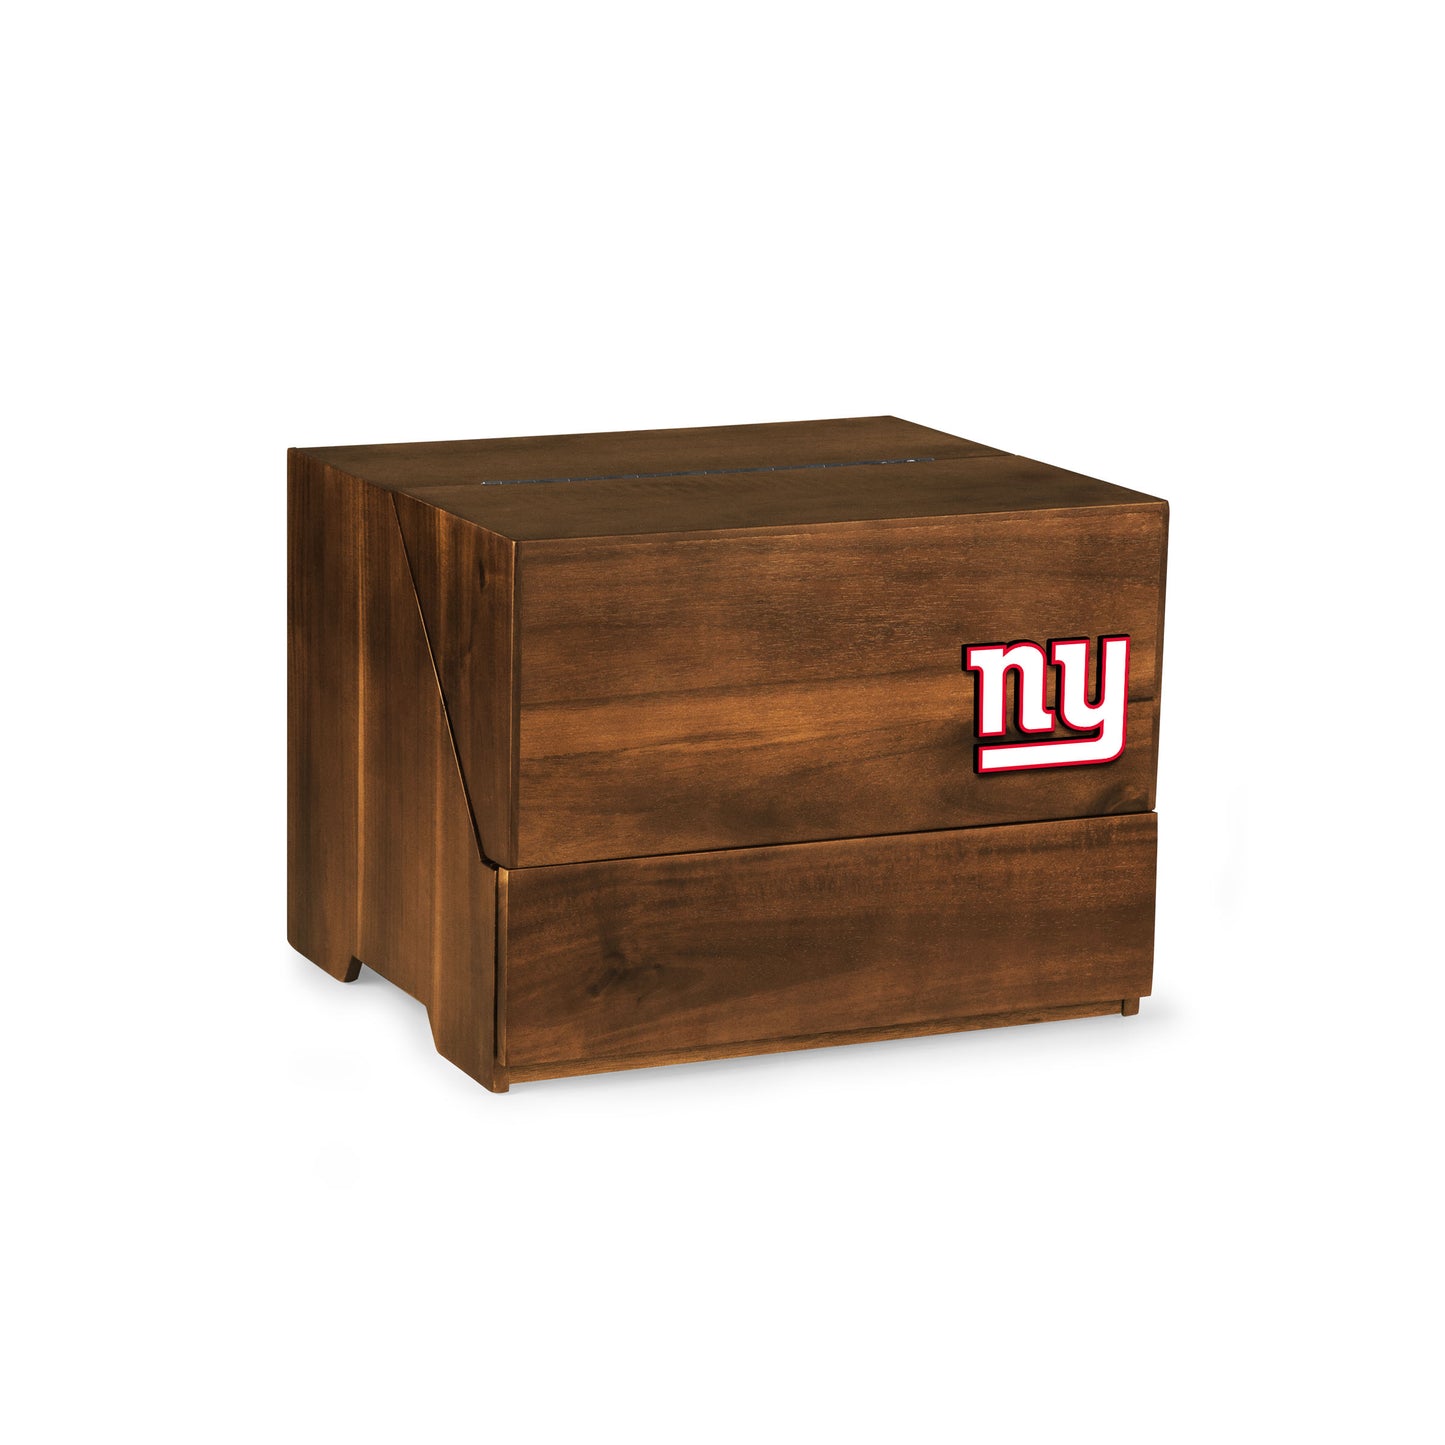 New York Giants - Madison Acacia Tabletop Bar Set